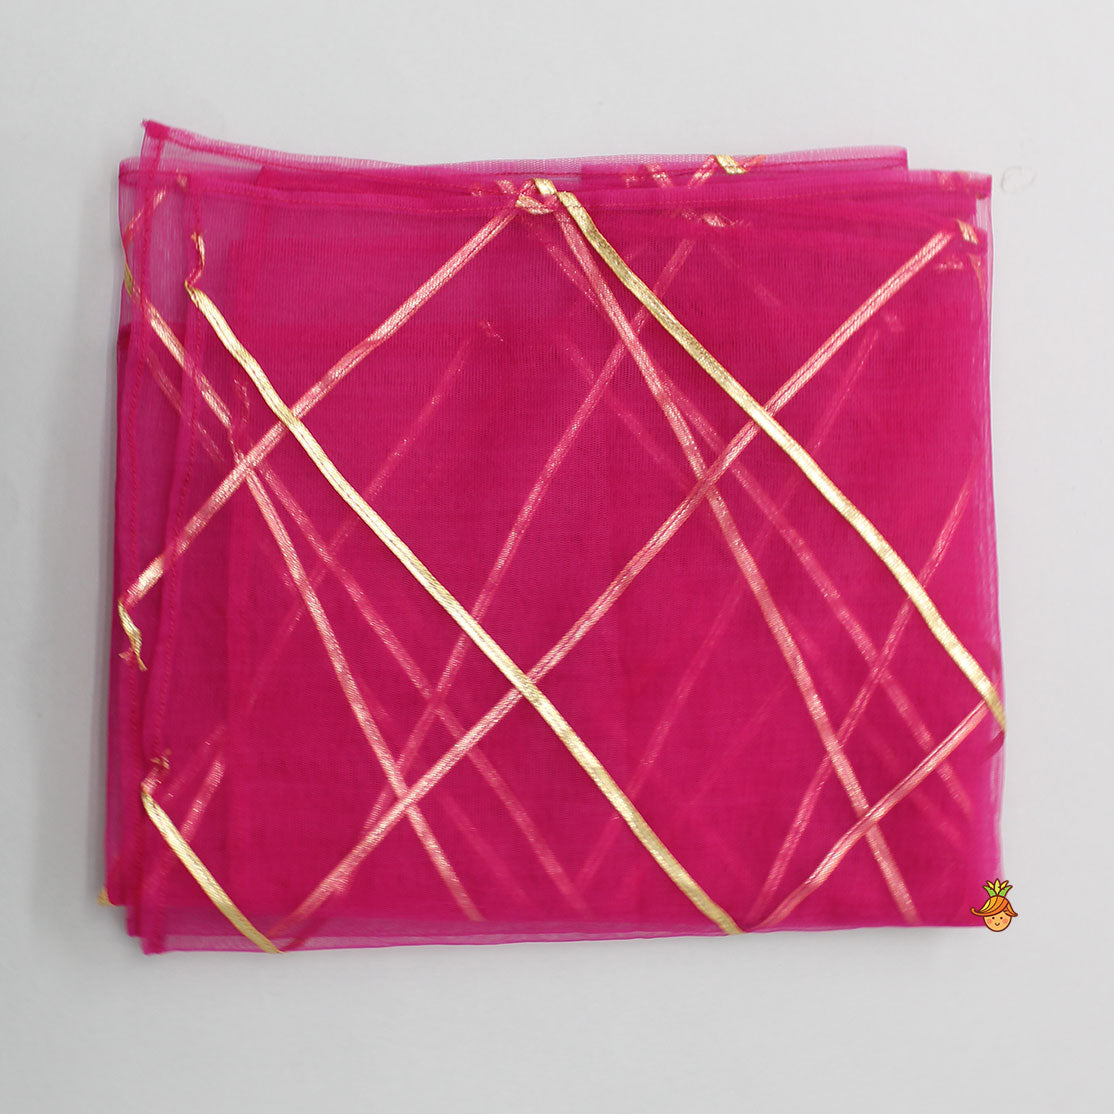 Gota Work Hot Pink Top  And Elegant Tassels Embellished Flared Lehenga With Net Dupatta